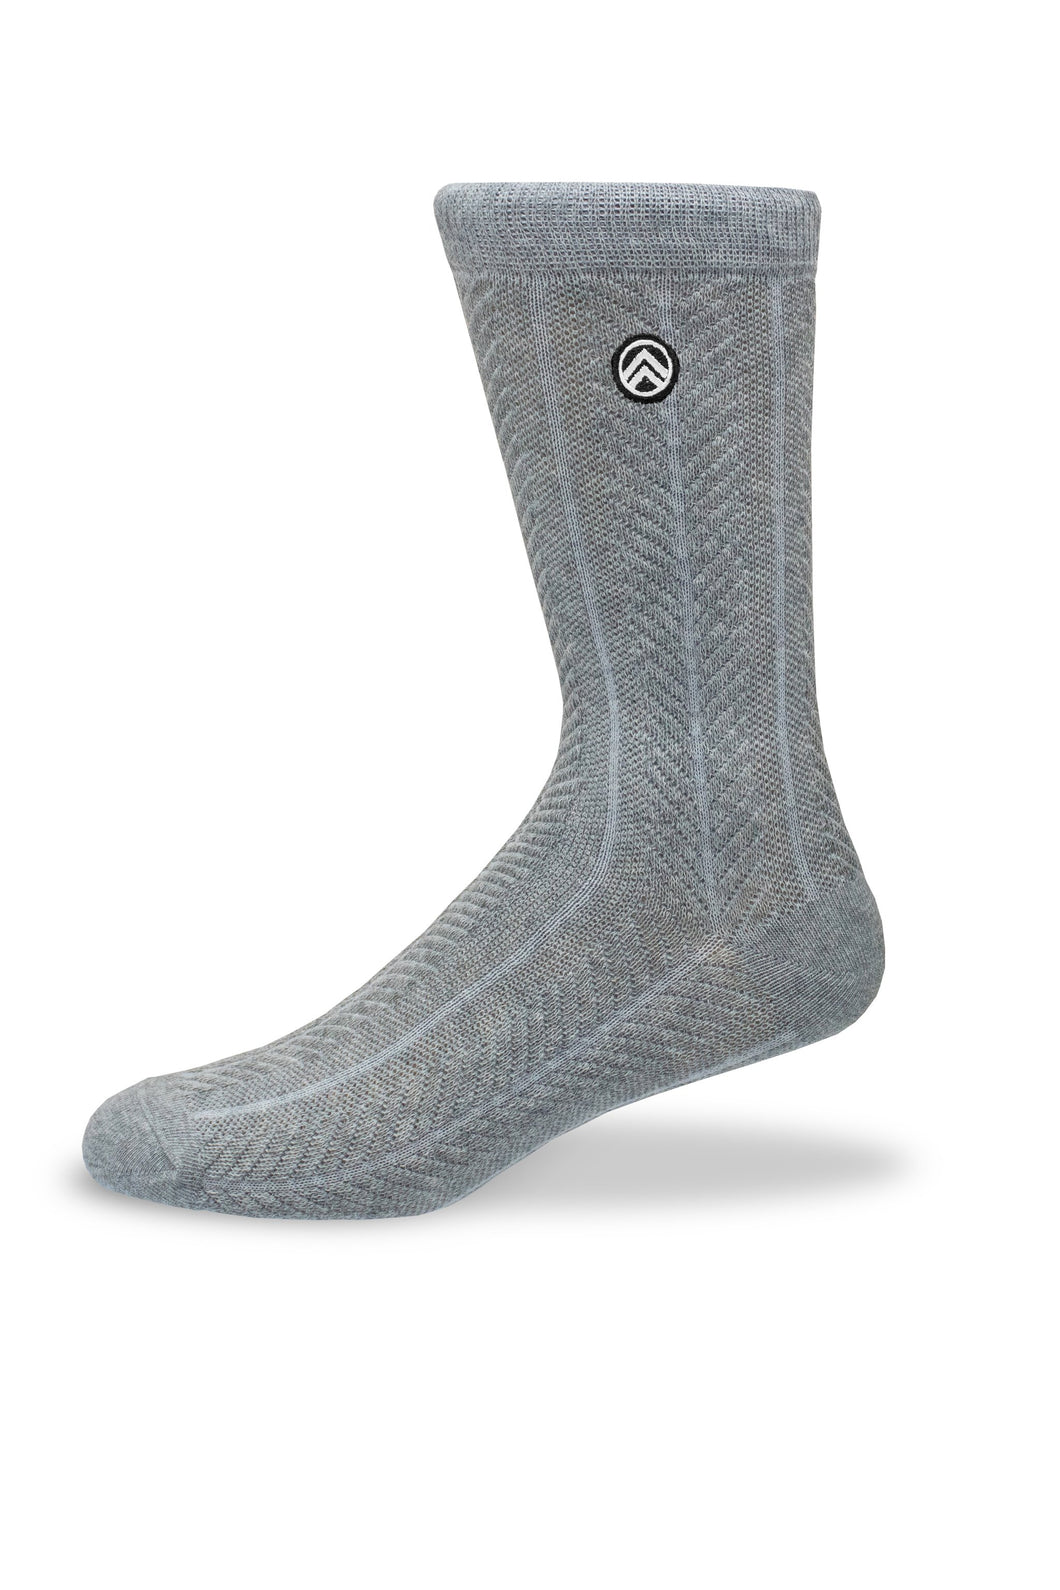 Sky Footwear Socks, Stormy Gray